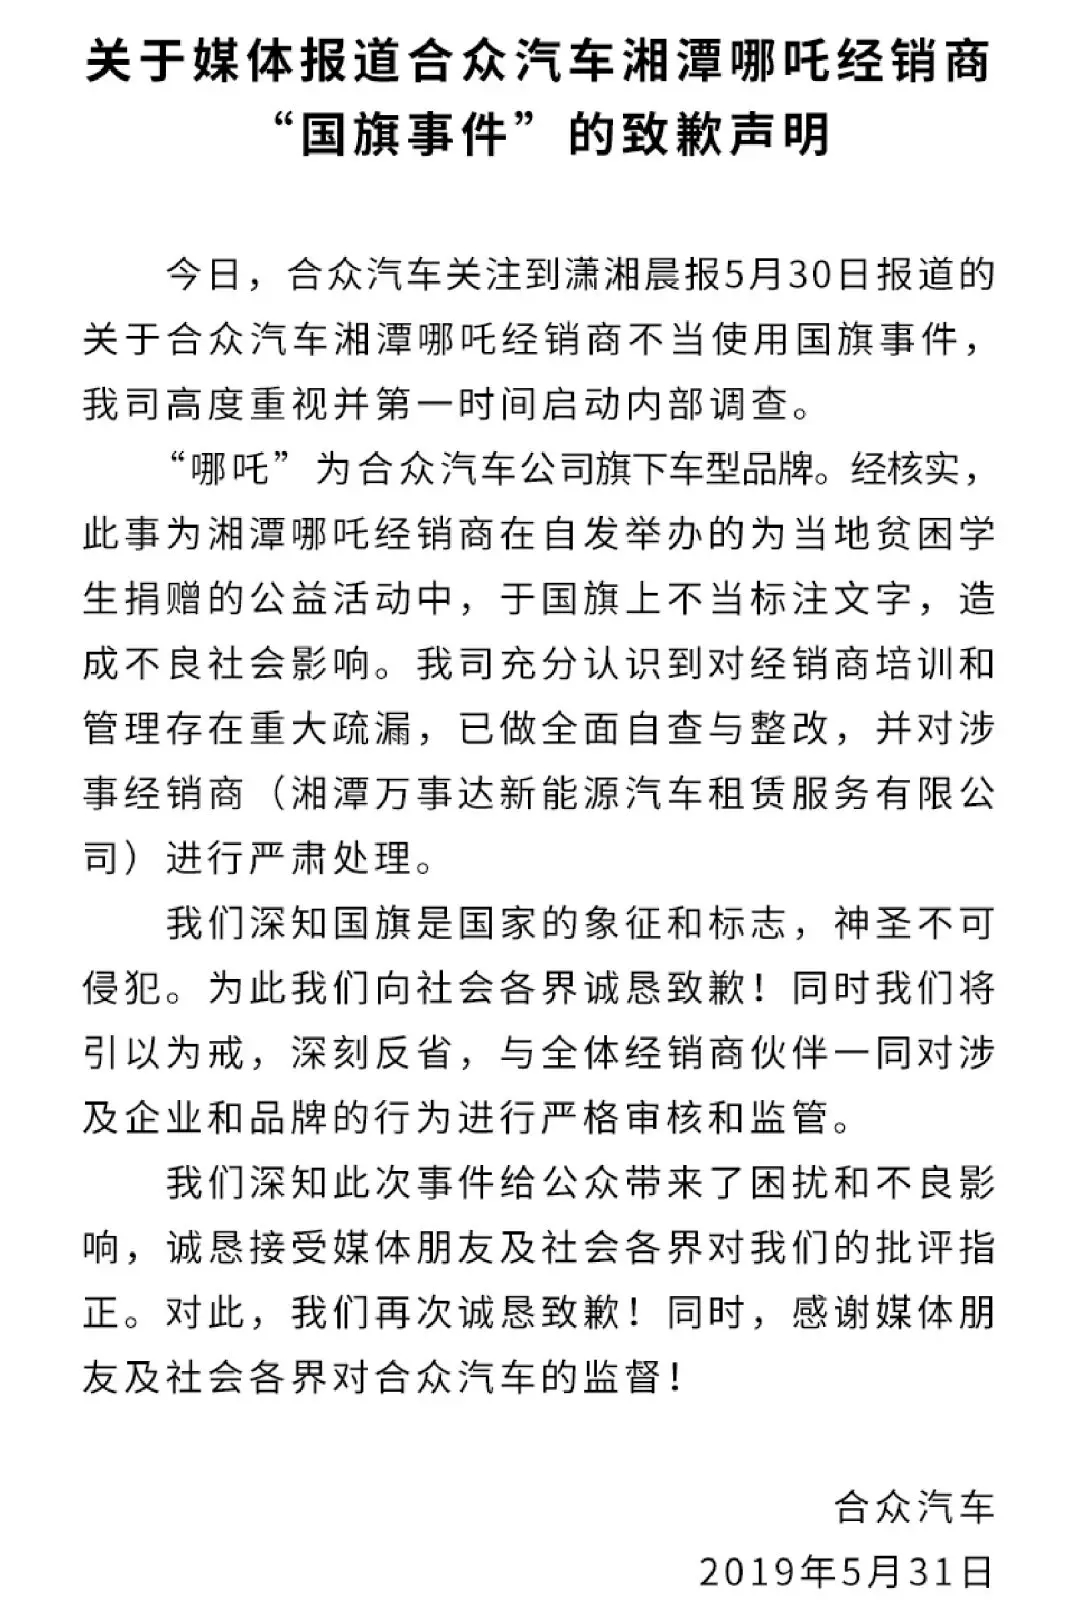 据教育部部长陈宝生介绍，双一流建设不是211工程、985工程的翻版，也不是升级版，更不是山寨版，它是一个全新的计划。